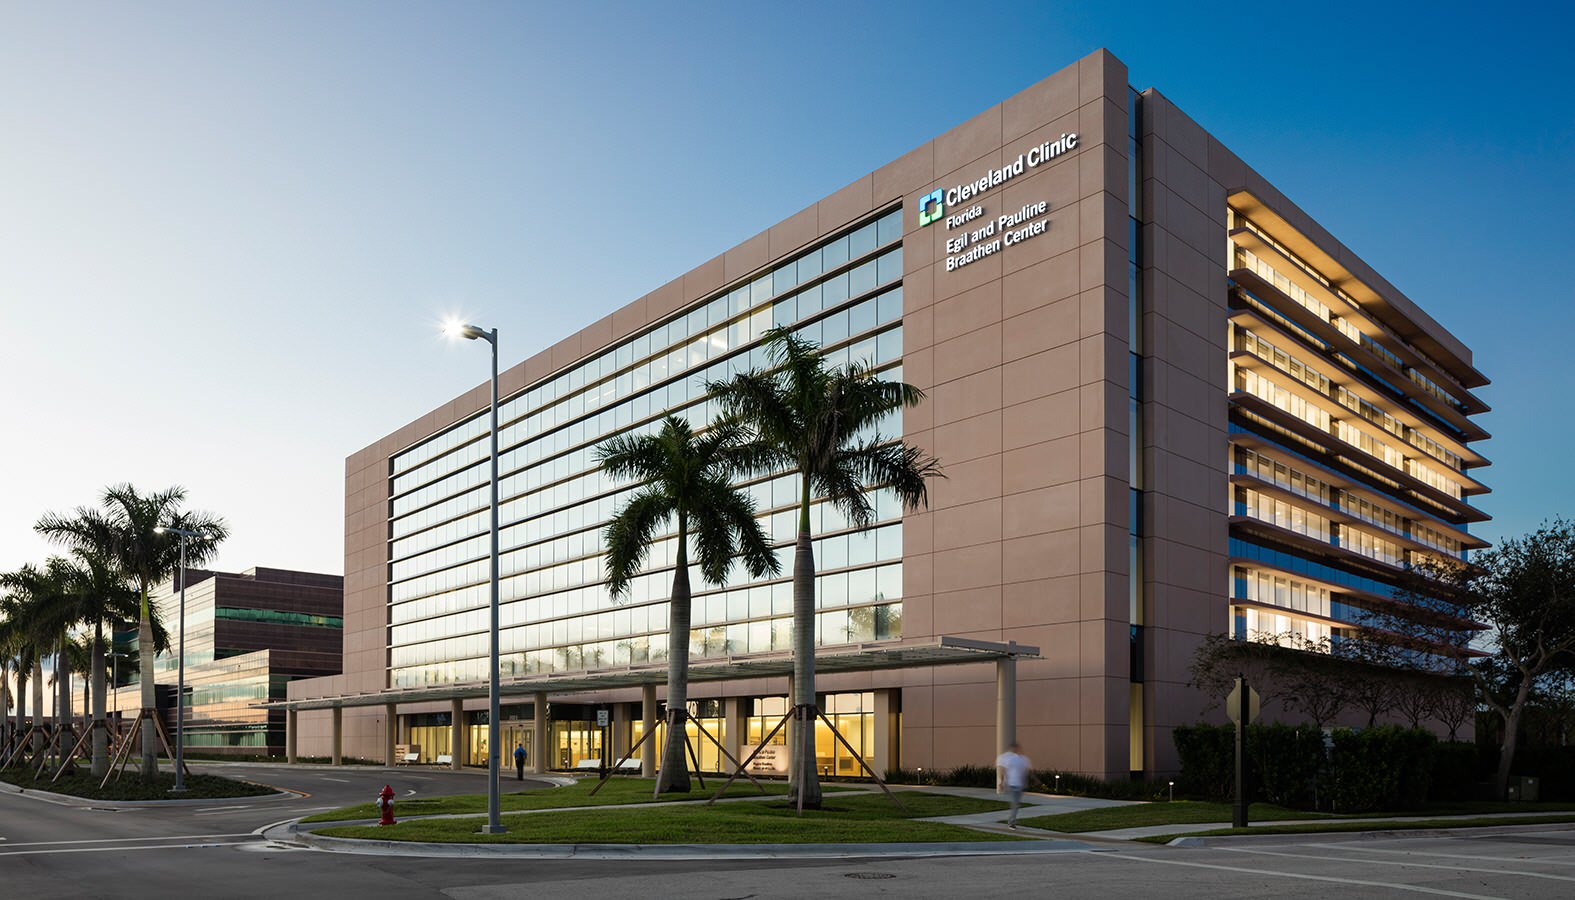 Cleveland Clinic Florida Neurological Institute / Cancer Institute – SOM